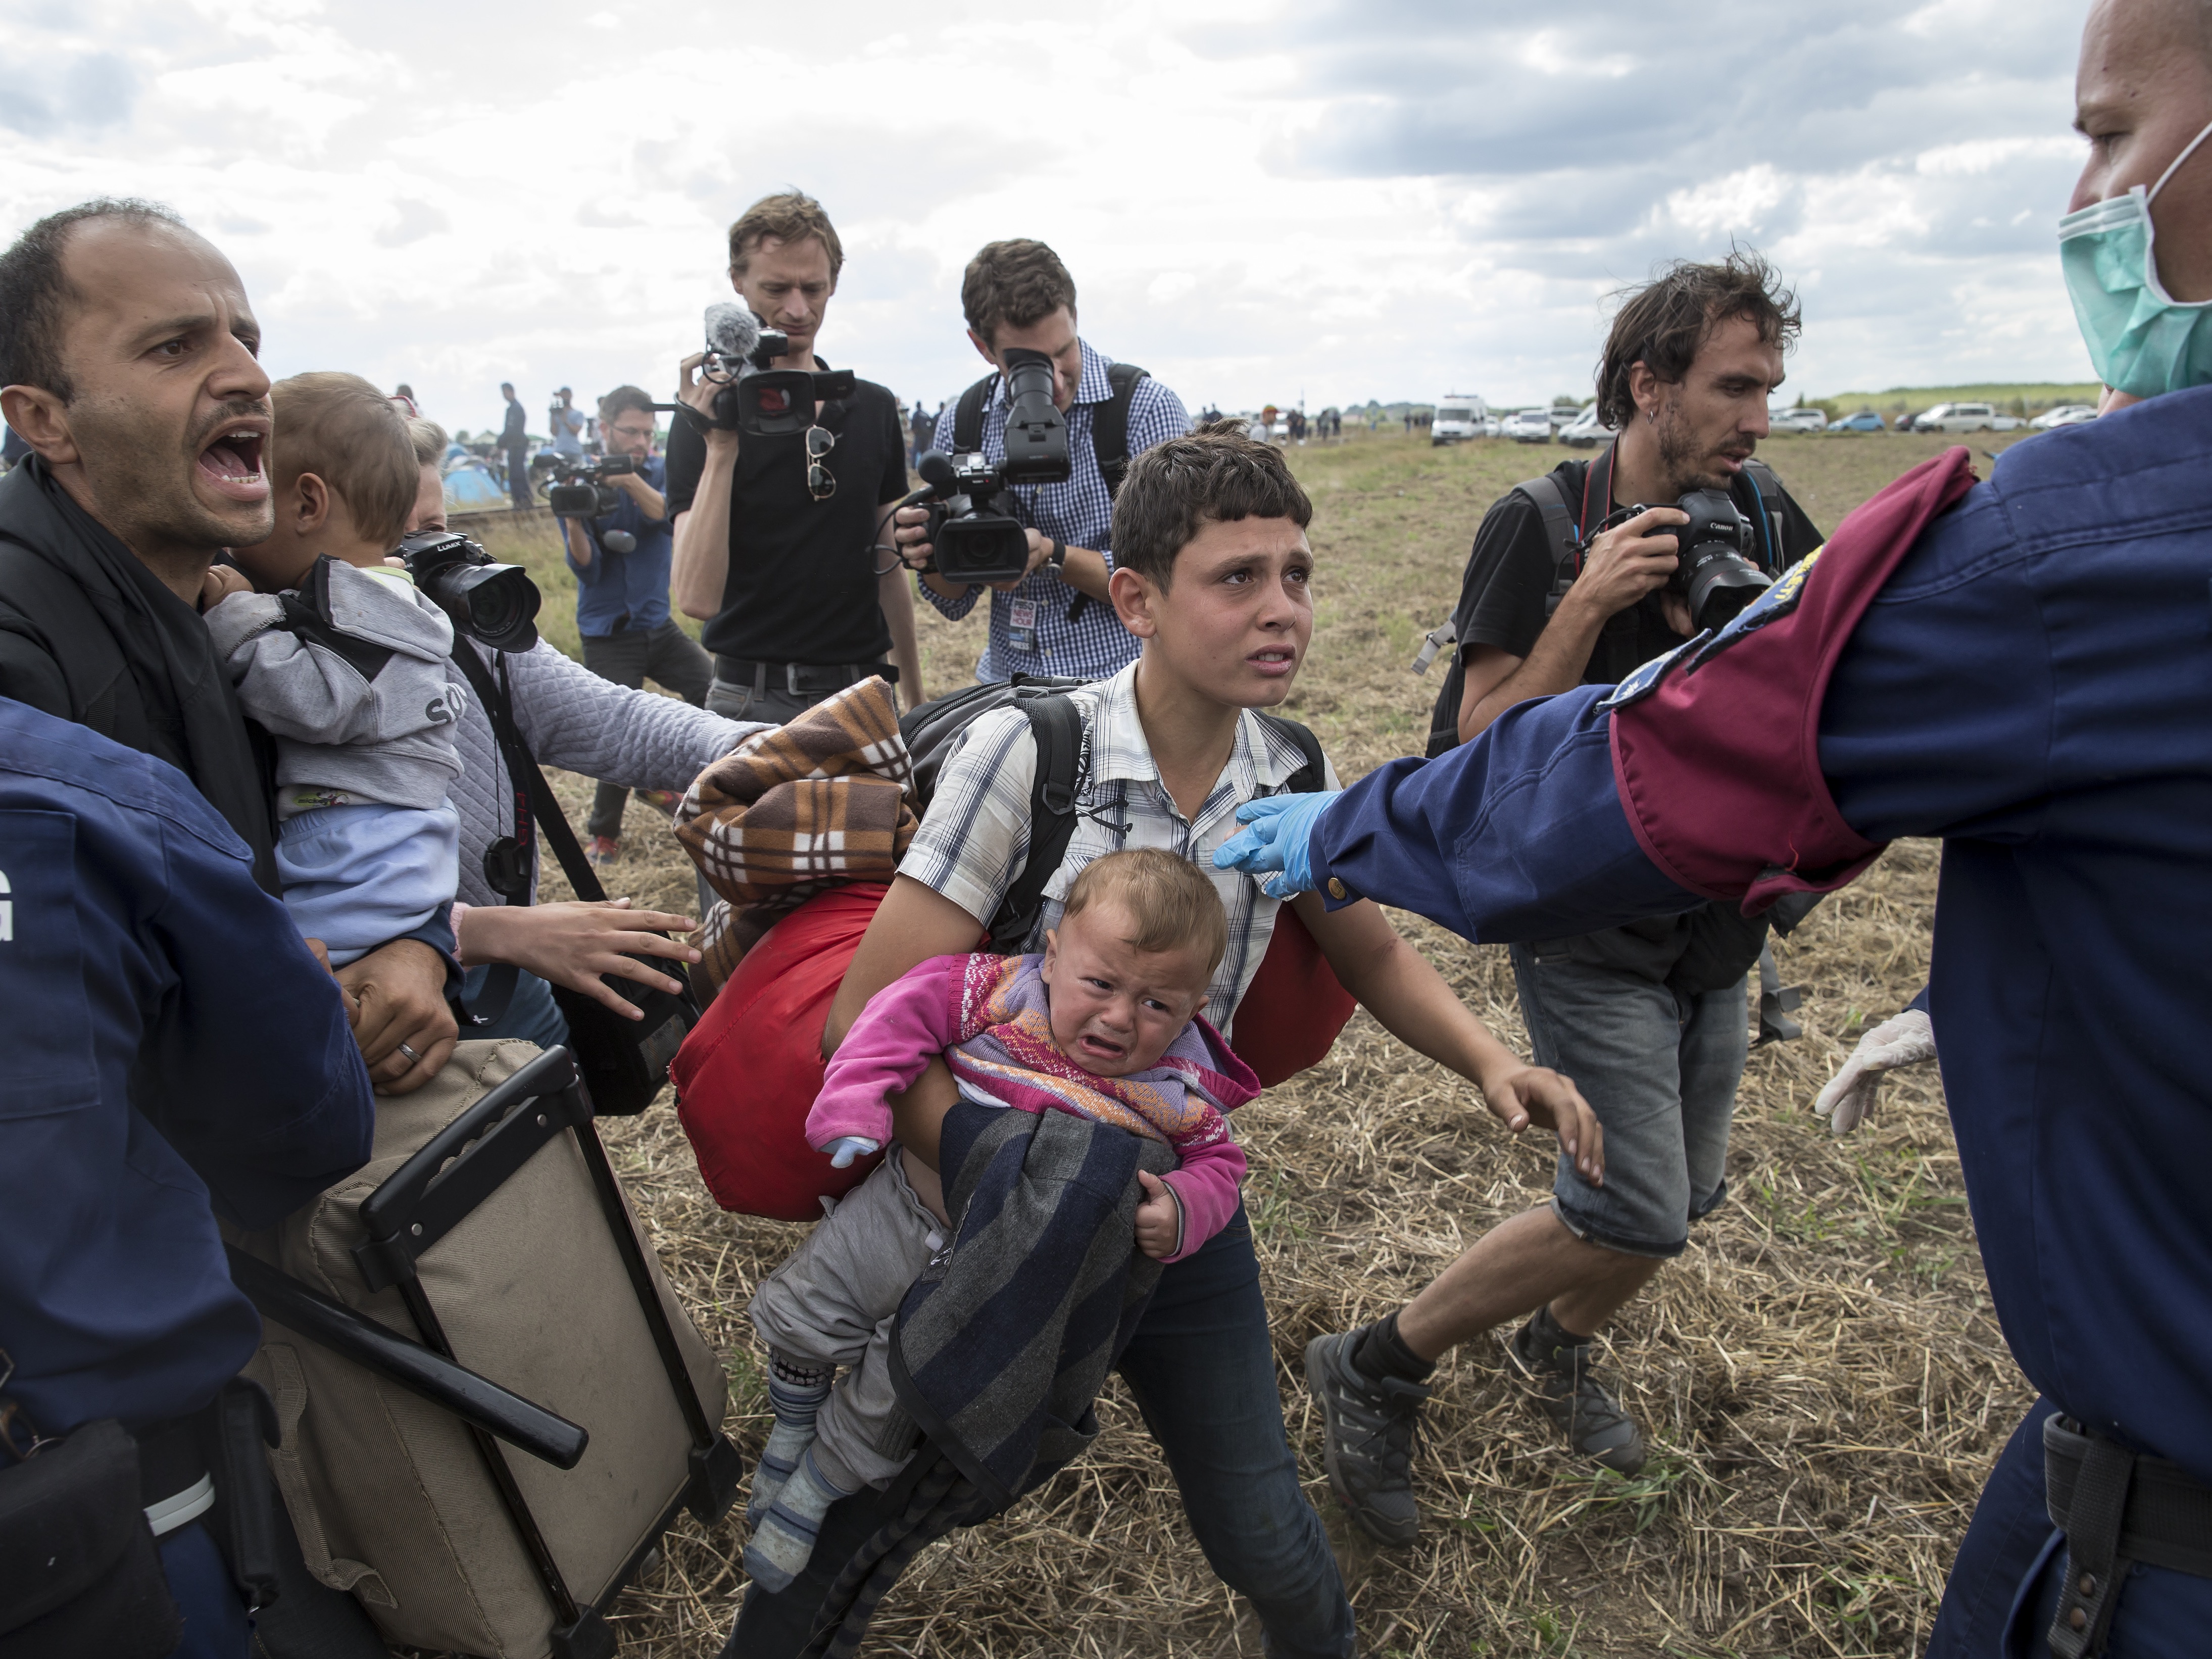 إيقاف مهاجر يحمل رضيعا من قبل ضباط الشرطة  الهنغارية وهو يحاول الفرار في حقل مجاور لنقطة تجميع في قرية  روسزكي، هنغاريا، 8 أيلول 2015